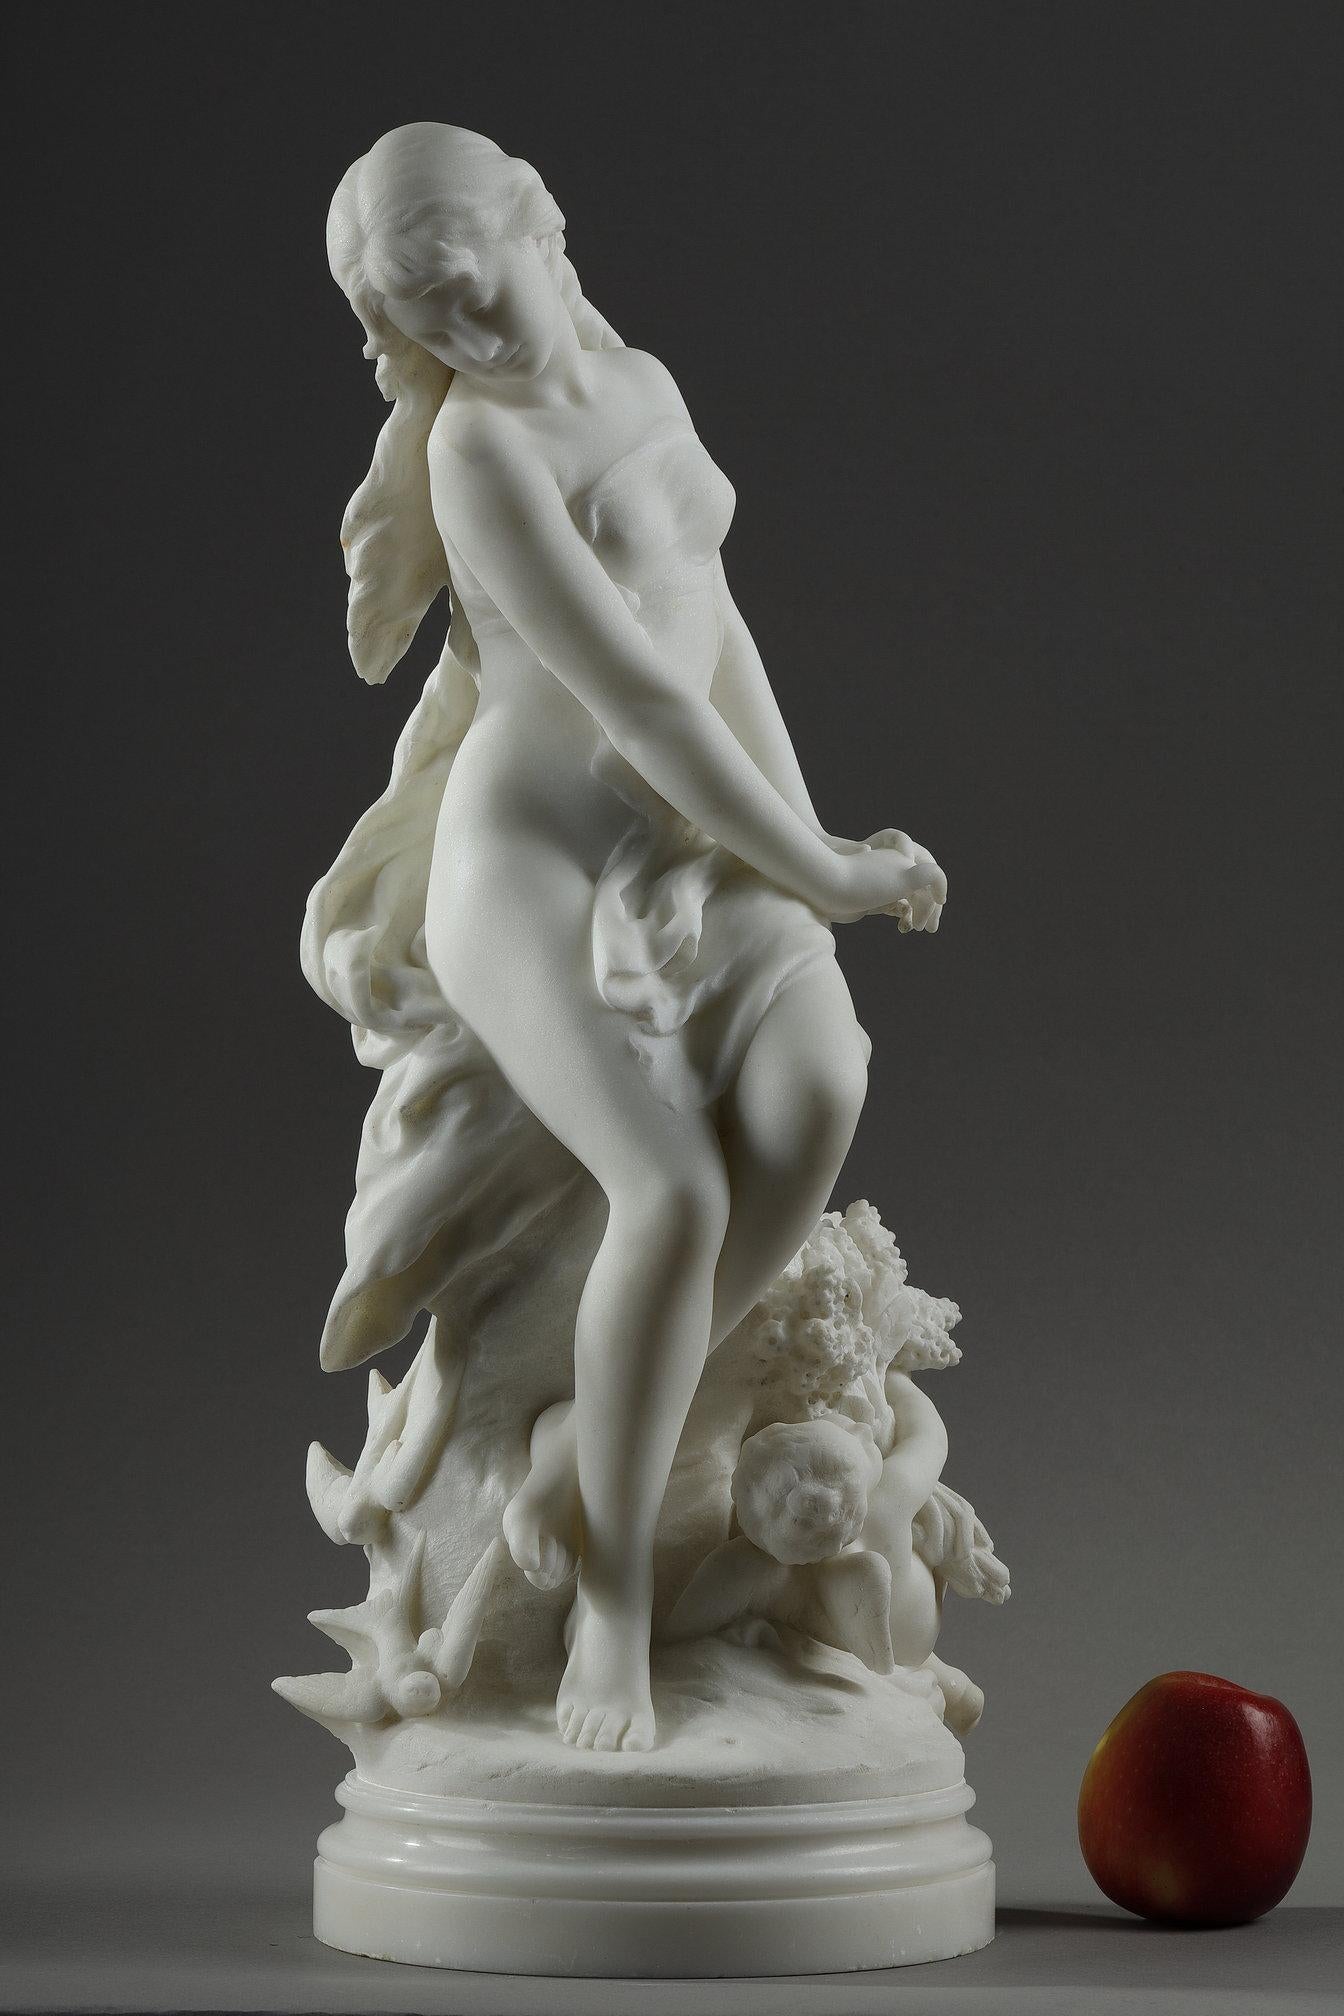 Elegante Skulptur aus Carrara-Marmor, die Venus (Aphrodite) mit leichtem Schleier darstellt, auf einem Felsen sitzend, mit Amor (Eros) zu ihren Füßen, der einen großen Blumenstrauß trägt und von Schwalben umgeben ist. Diese Marmorgruppe ist eine